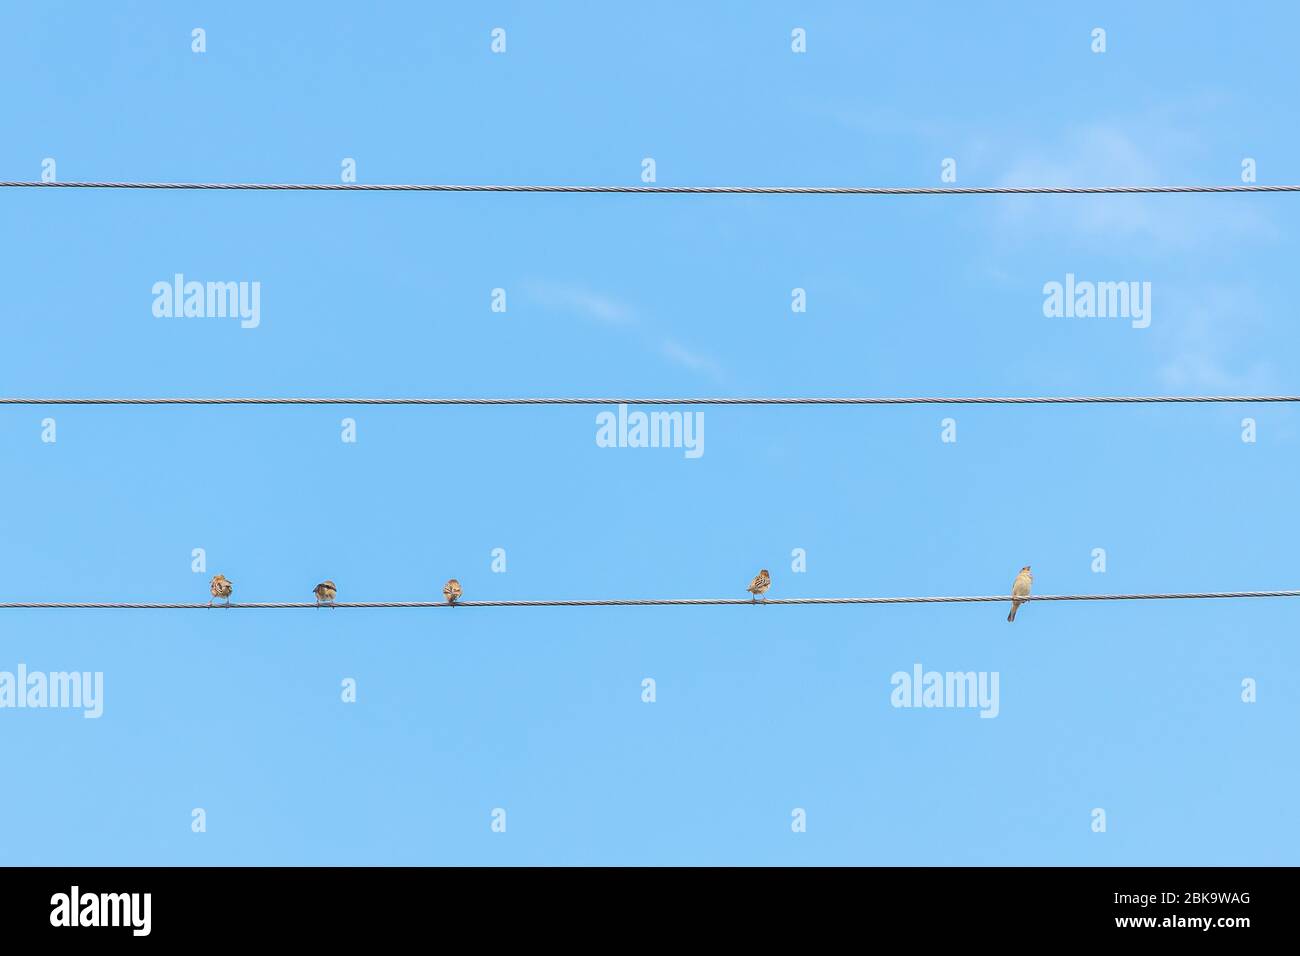 Passero seduto sul filo contro il cielo blu. Tre uccelli sono seduti insieme, due sono seduti lontani l'uno dall'altro. Concetto di distanza sociale. Foto Stock